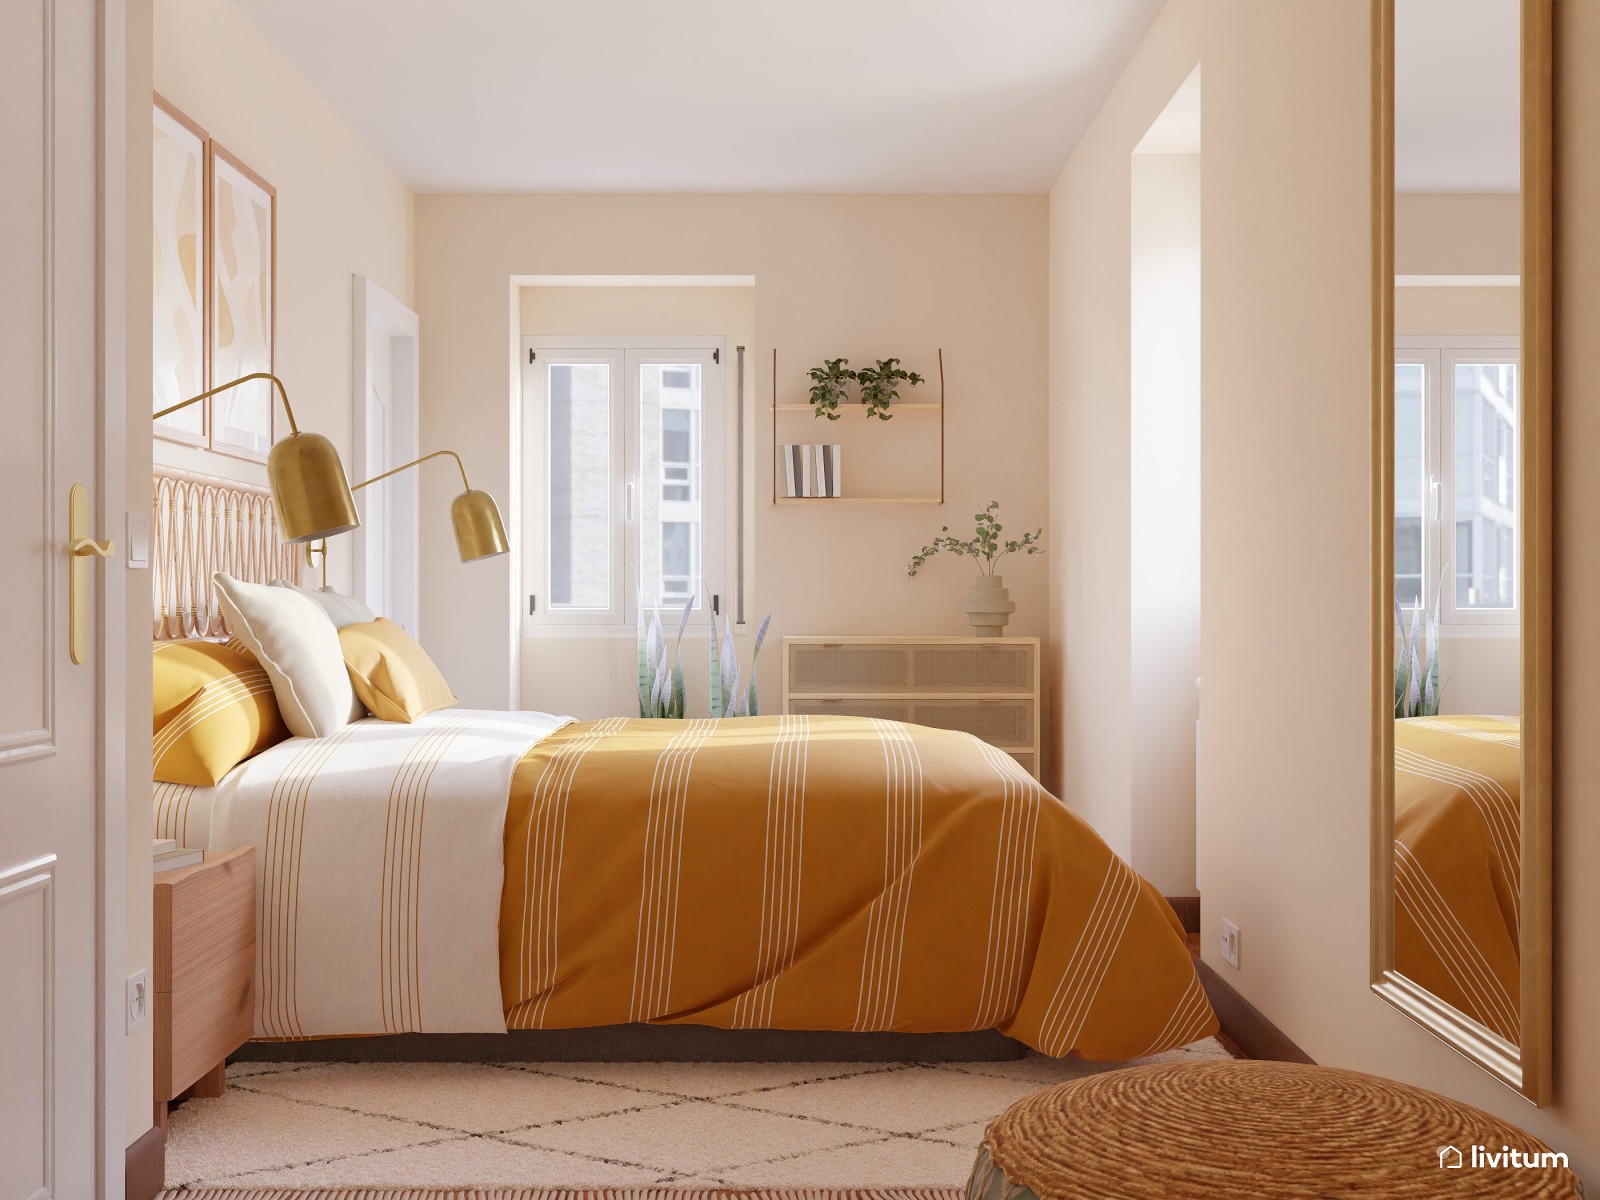 Dormitorio rústico en amarillo y madera 